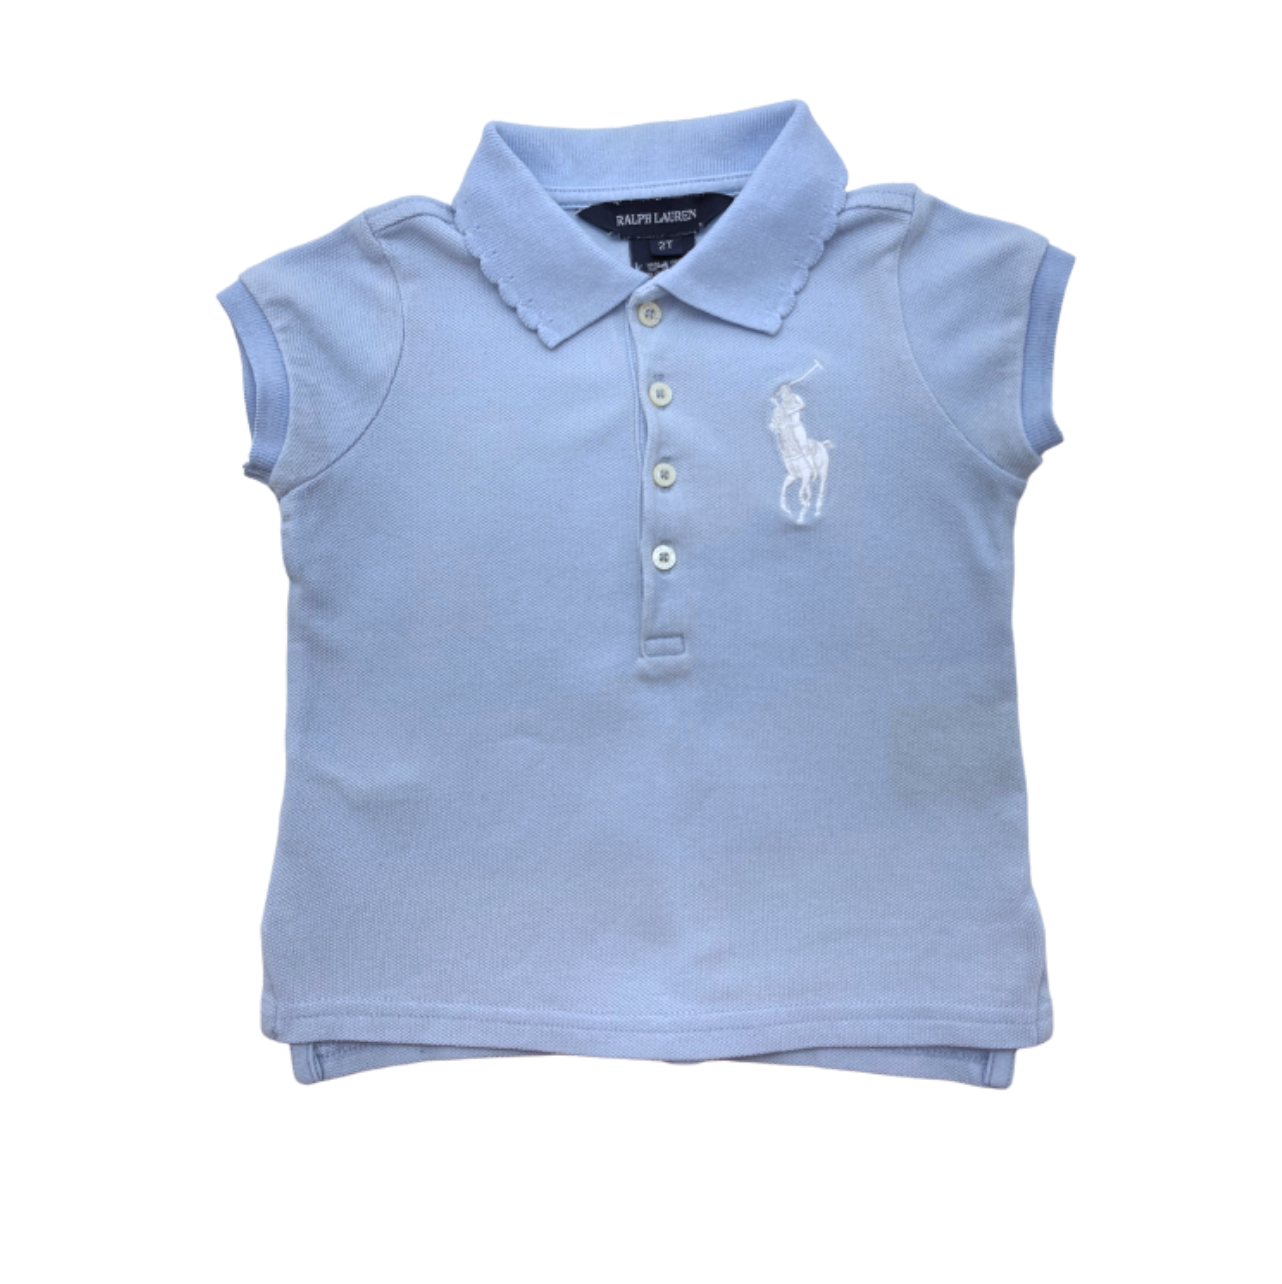 RALPH LAUREN - Light blue polo shirt - 2 years